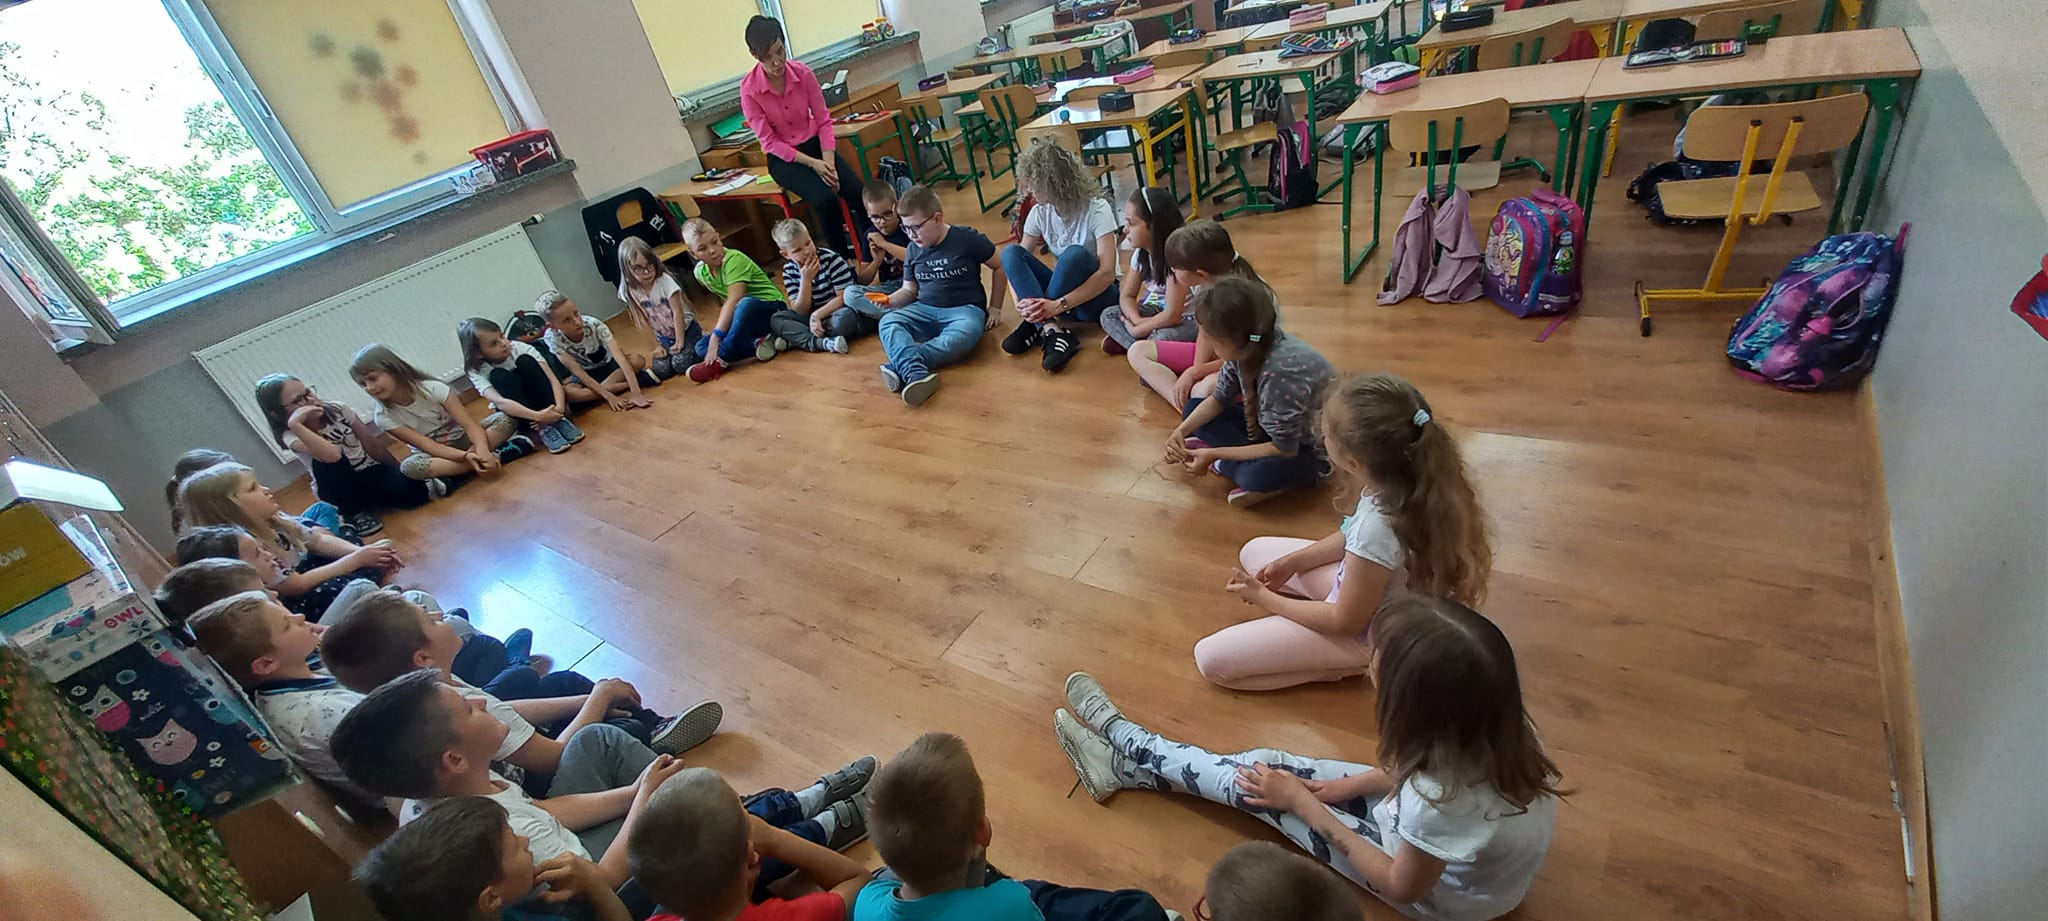 Zajęcia warsztatowe organizowane w szkole w Stobnie.